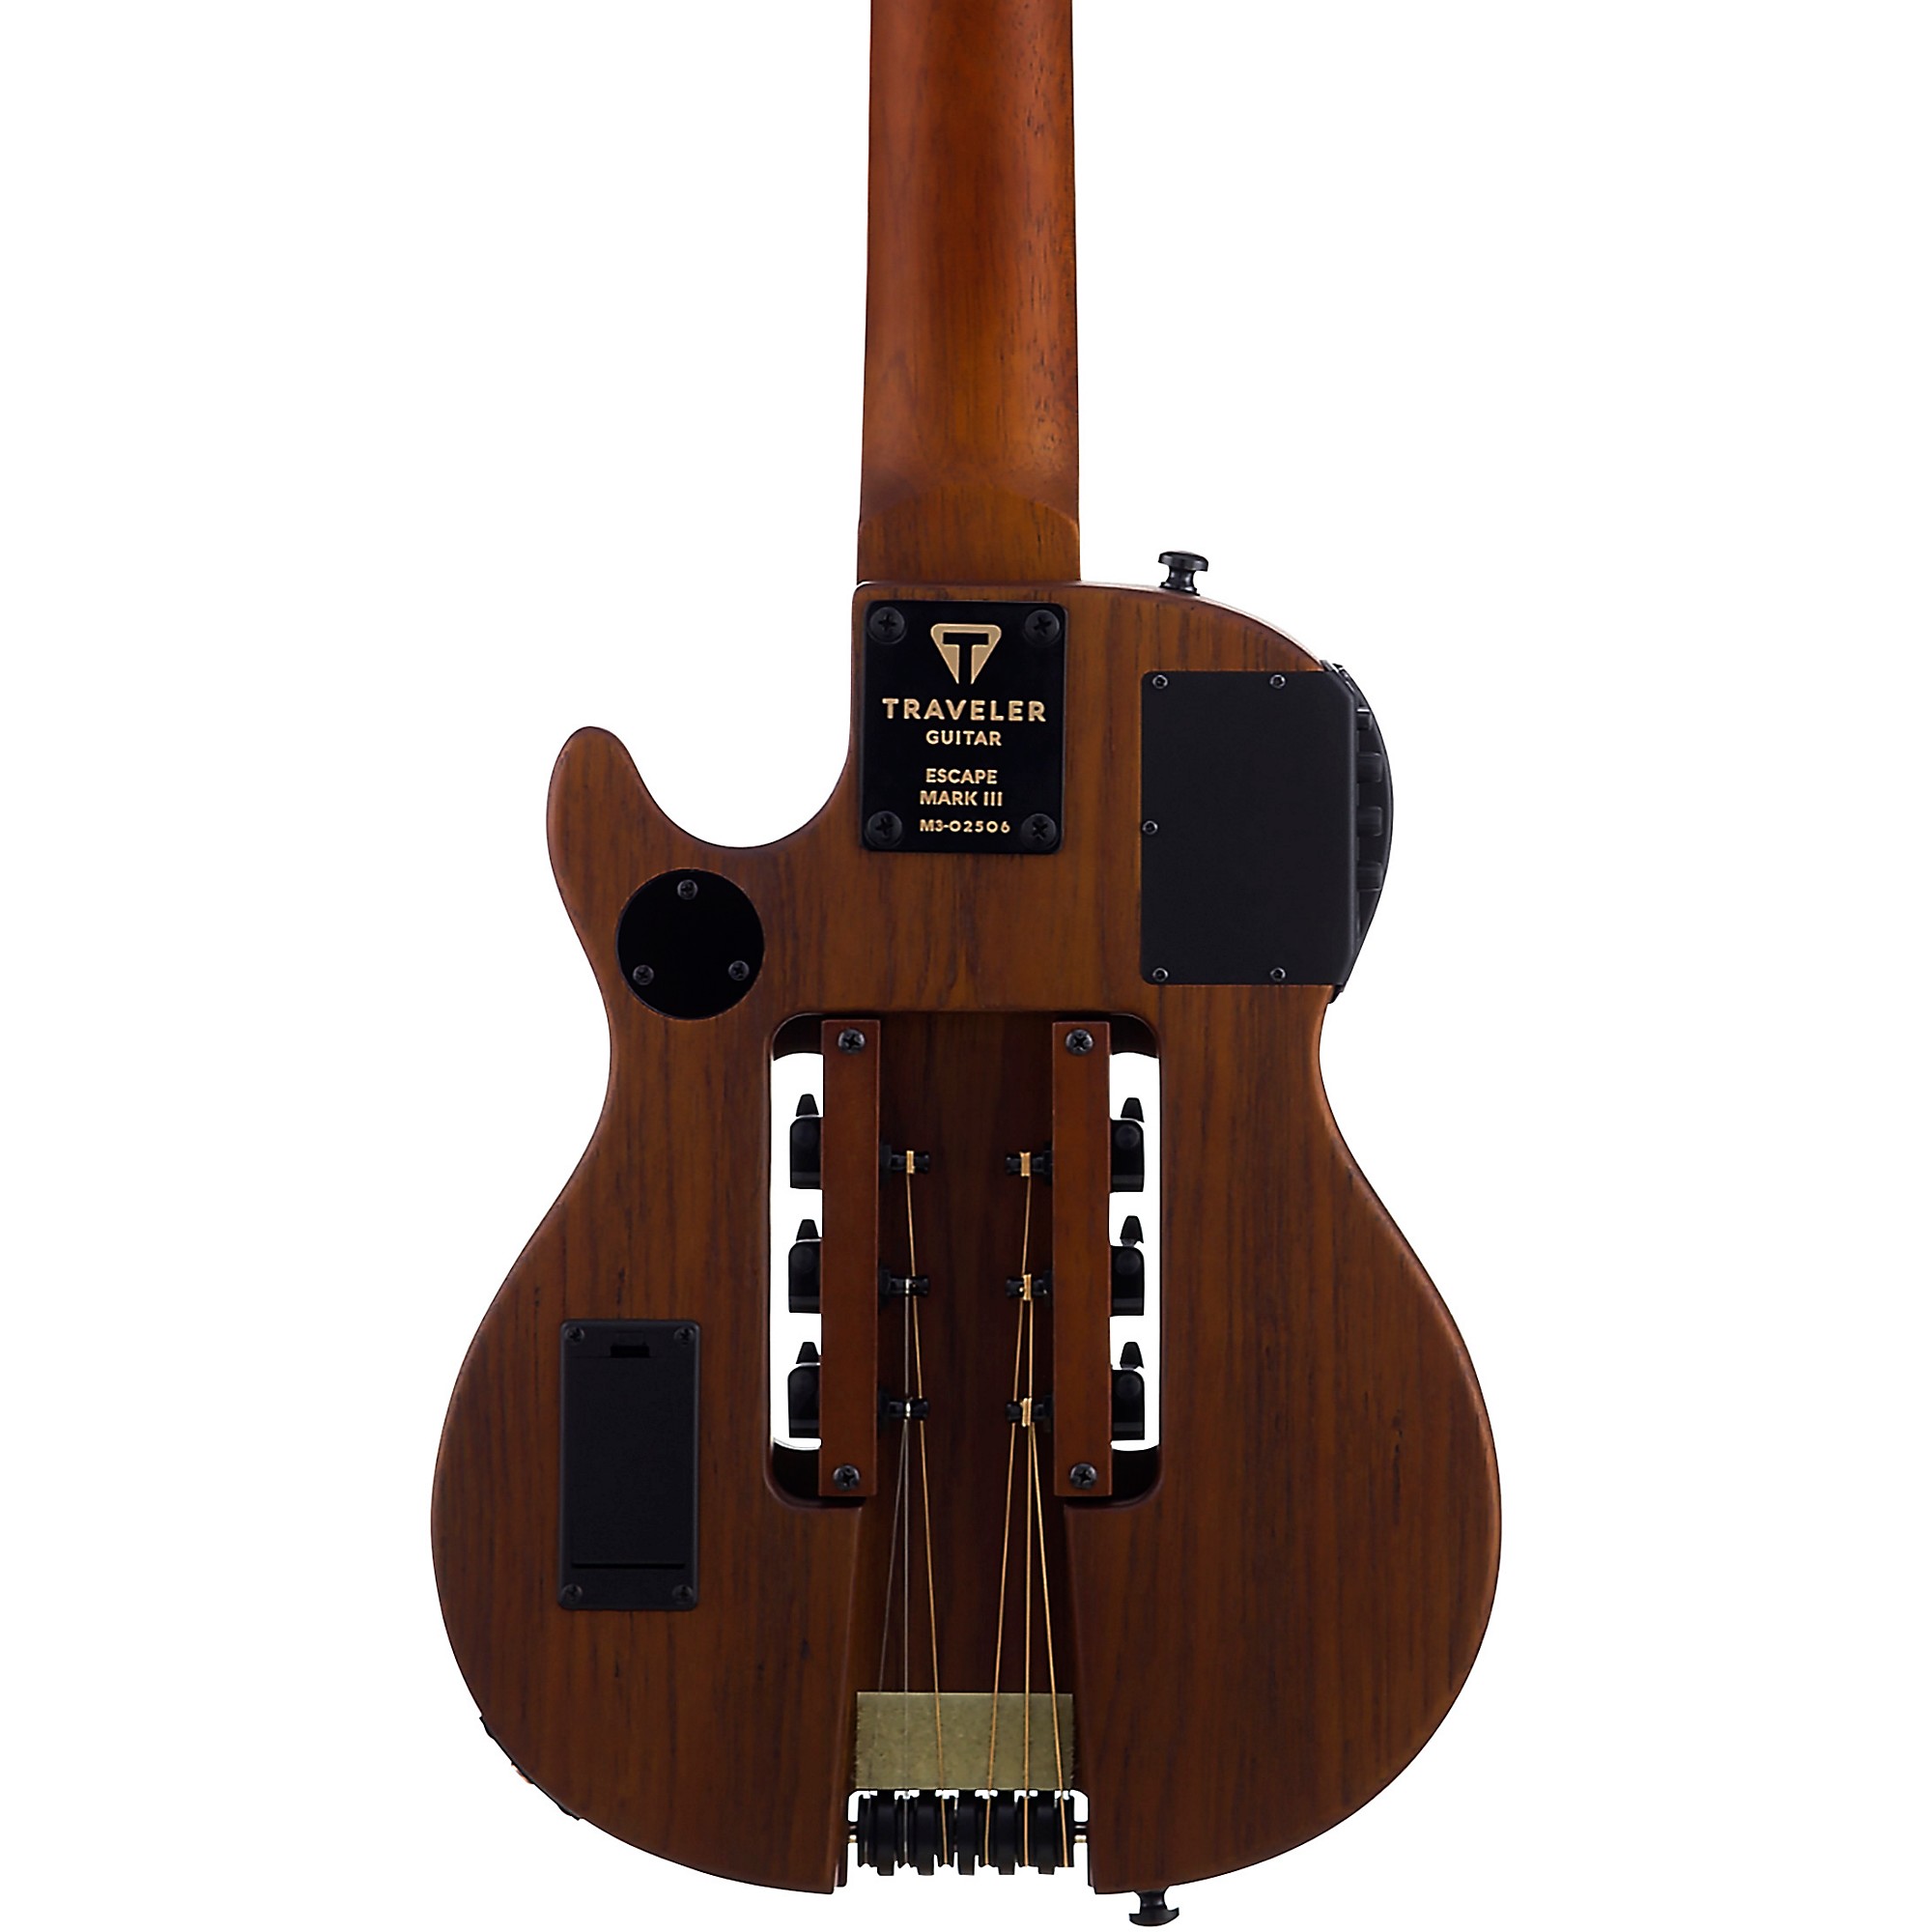 Traveler Guitar Escape Mark III Акустически-электрическая гитара из красного дерева